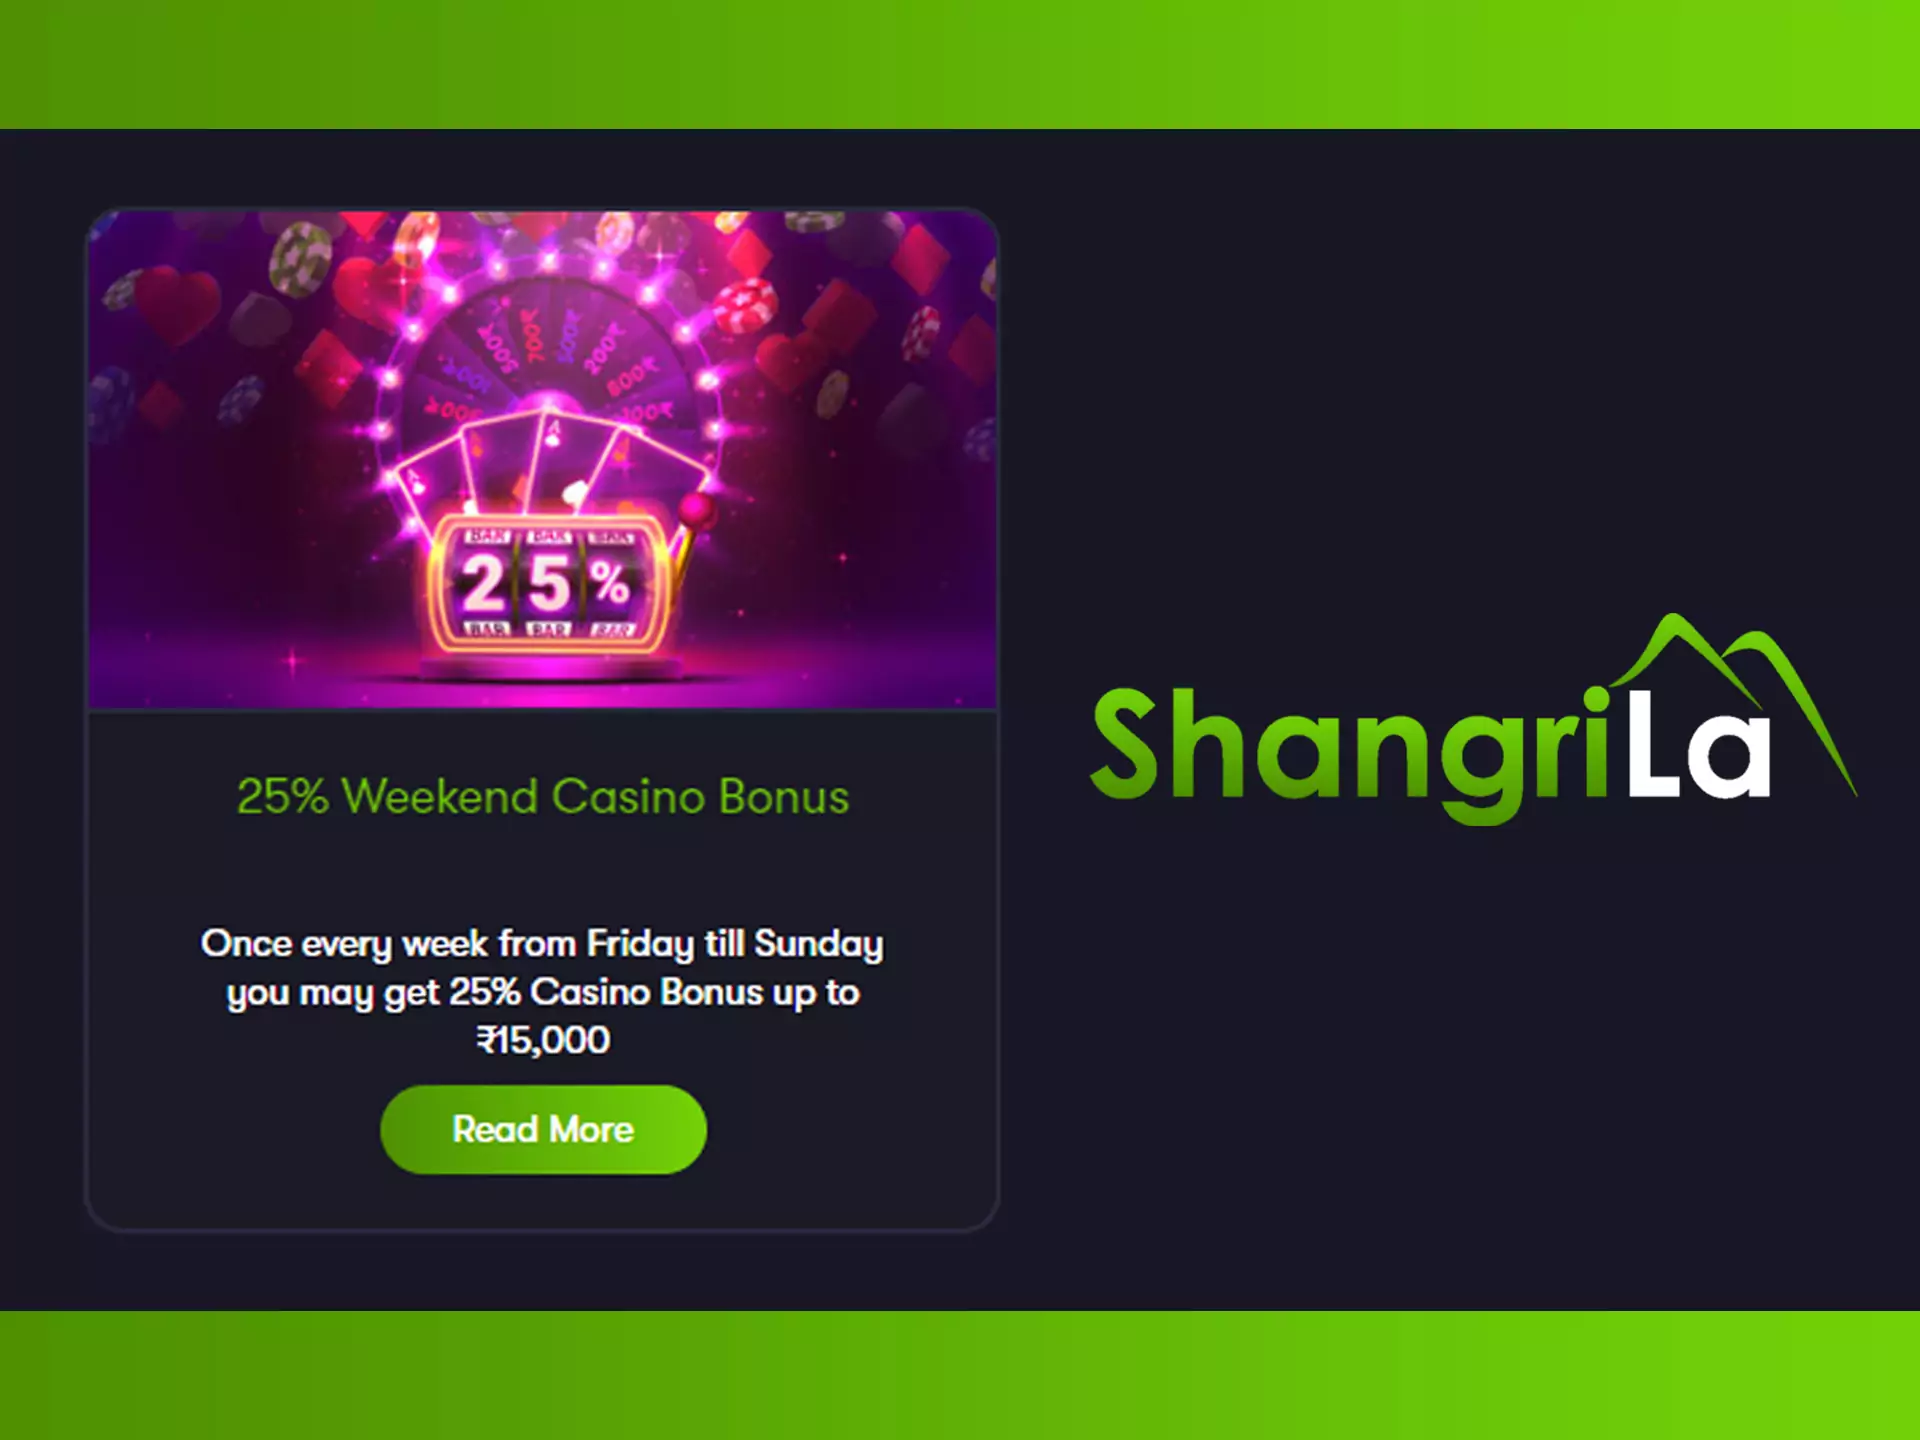 Earn casino bonus each week with Shangri La.